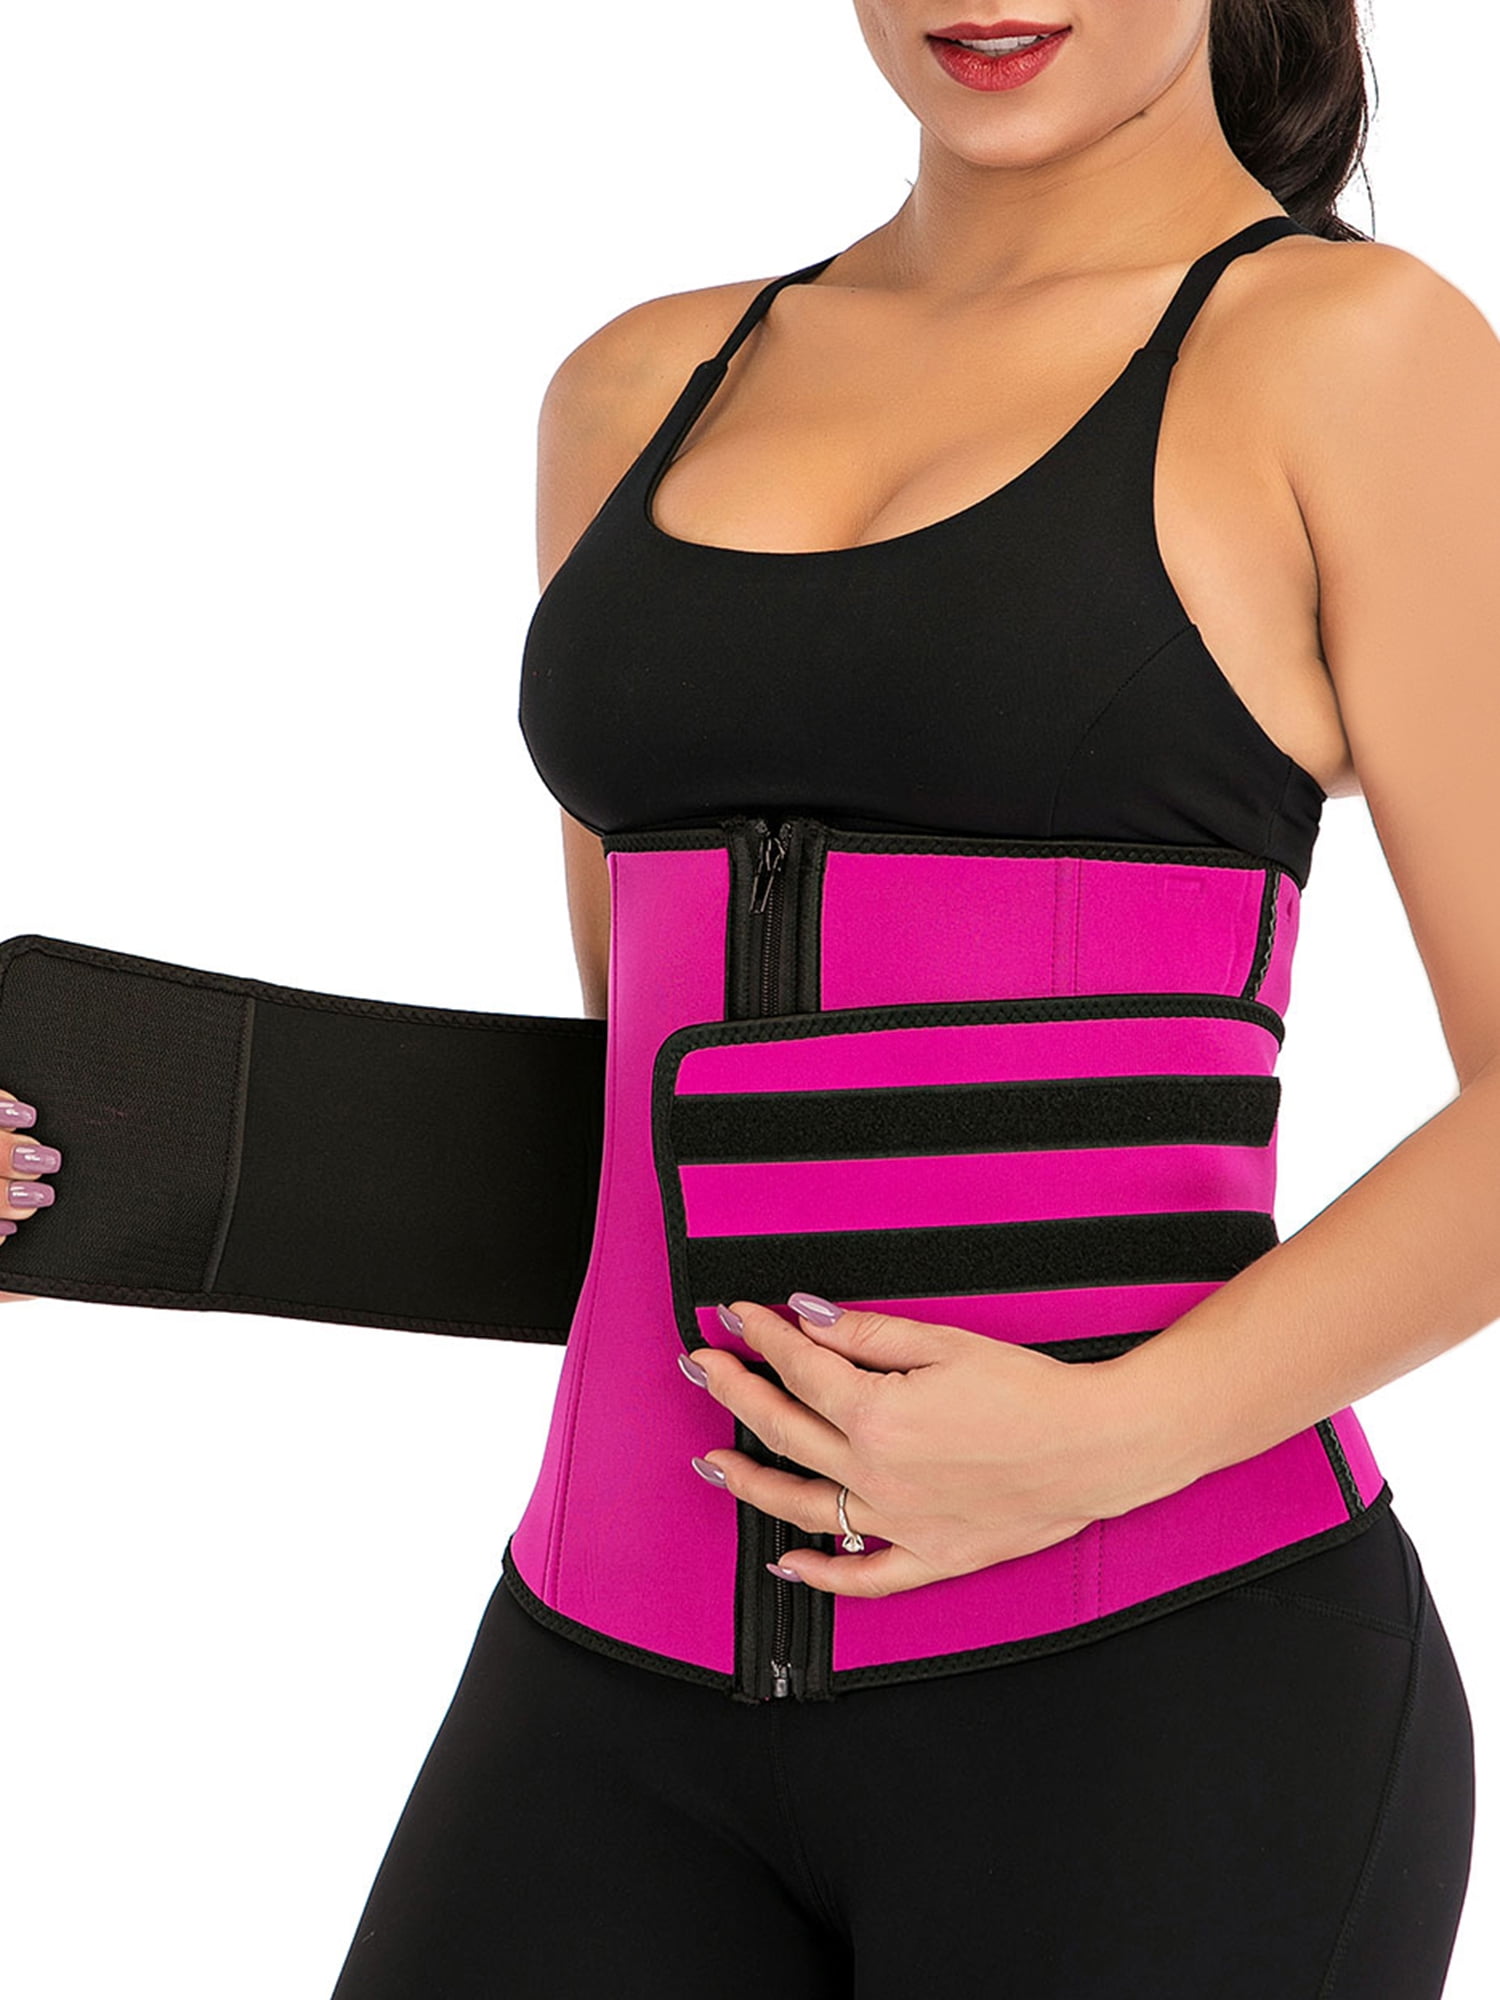 Details about   Neoprene Sweat Vest weightloss/ Shapewear Adjustable Slimming Underwear 4 women 